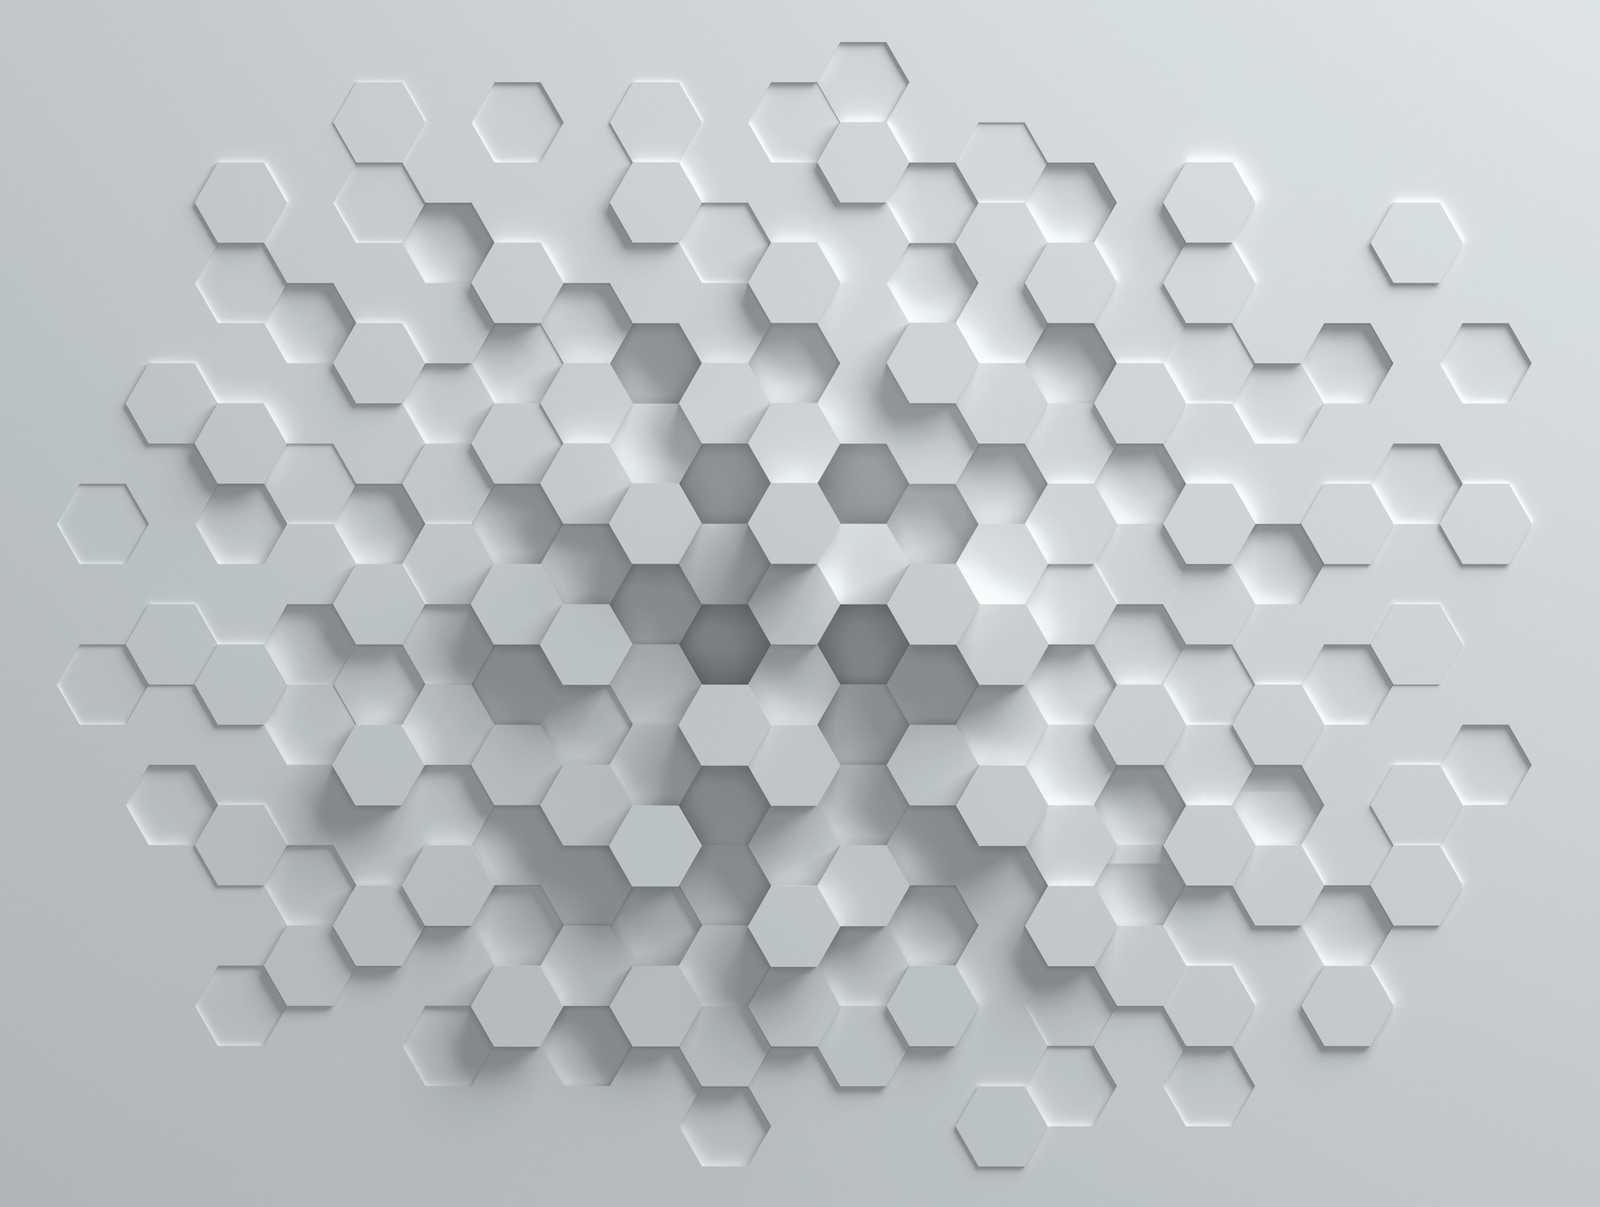             Tapeten-Neuheit | 3D Motivtapete mit Wabenmuster, Weiß & Grau
        